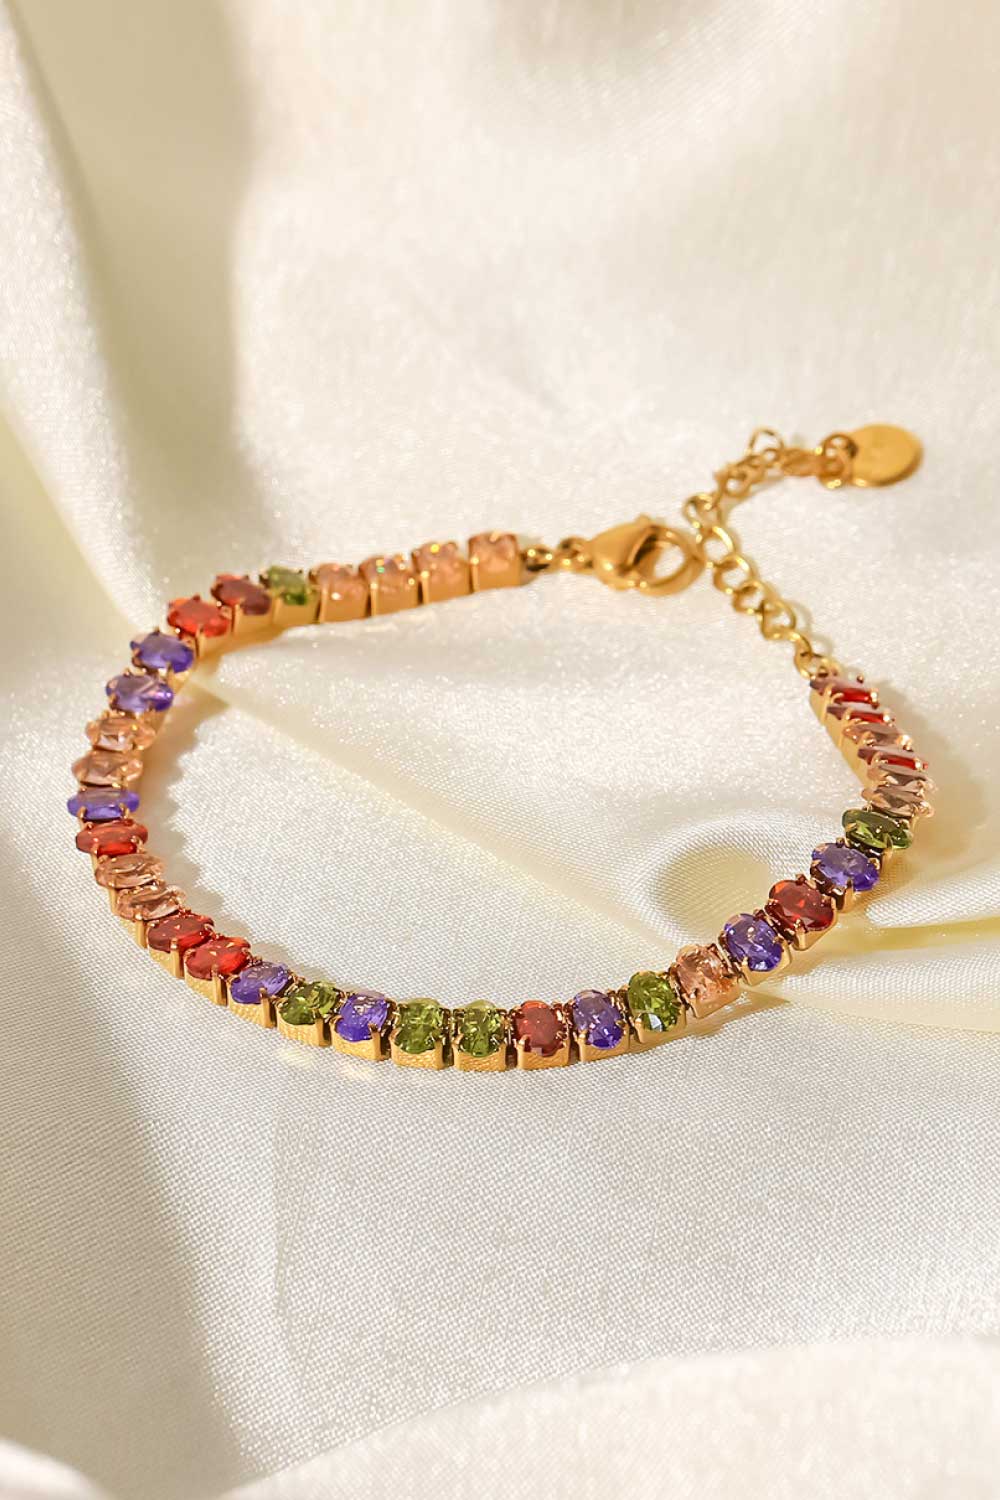 18K Gold Plated Multicolored Zircon Bracelet - Multicolored / One Size - Women’s Jewelry - Bracelets - 5 - 2024